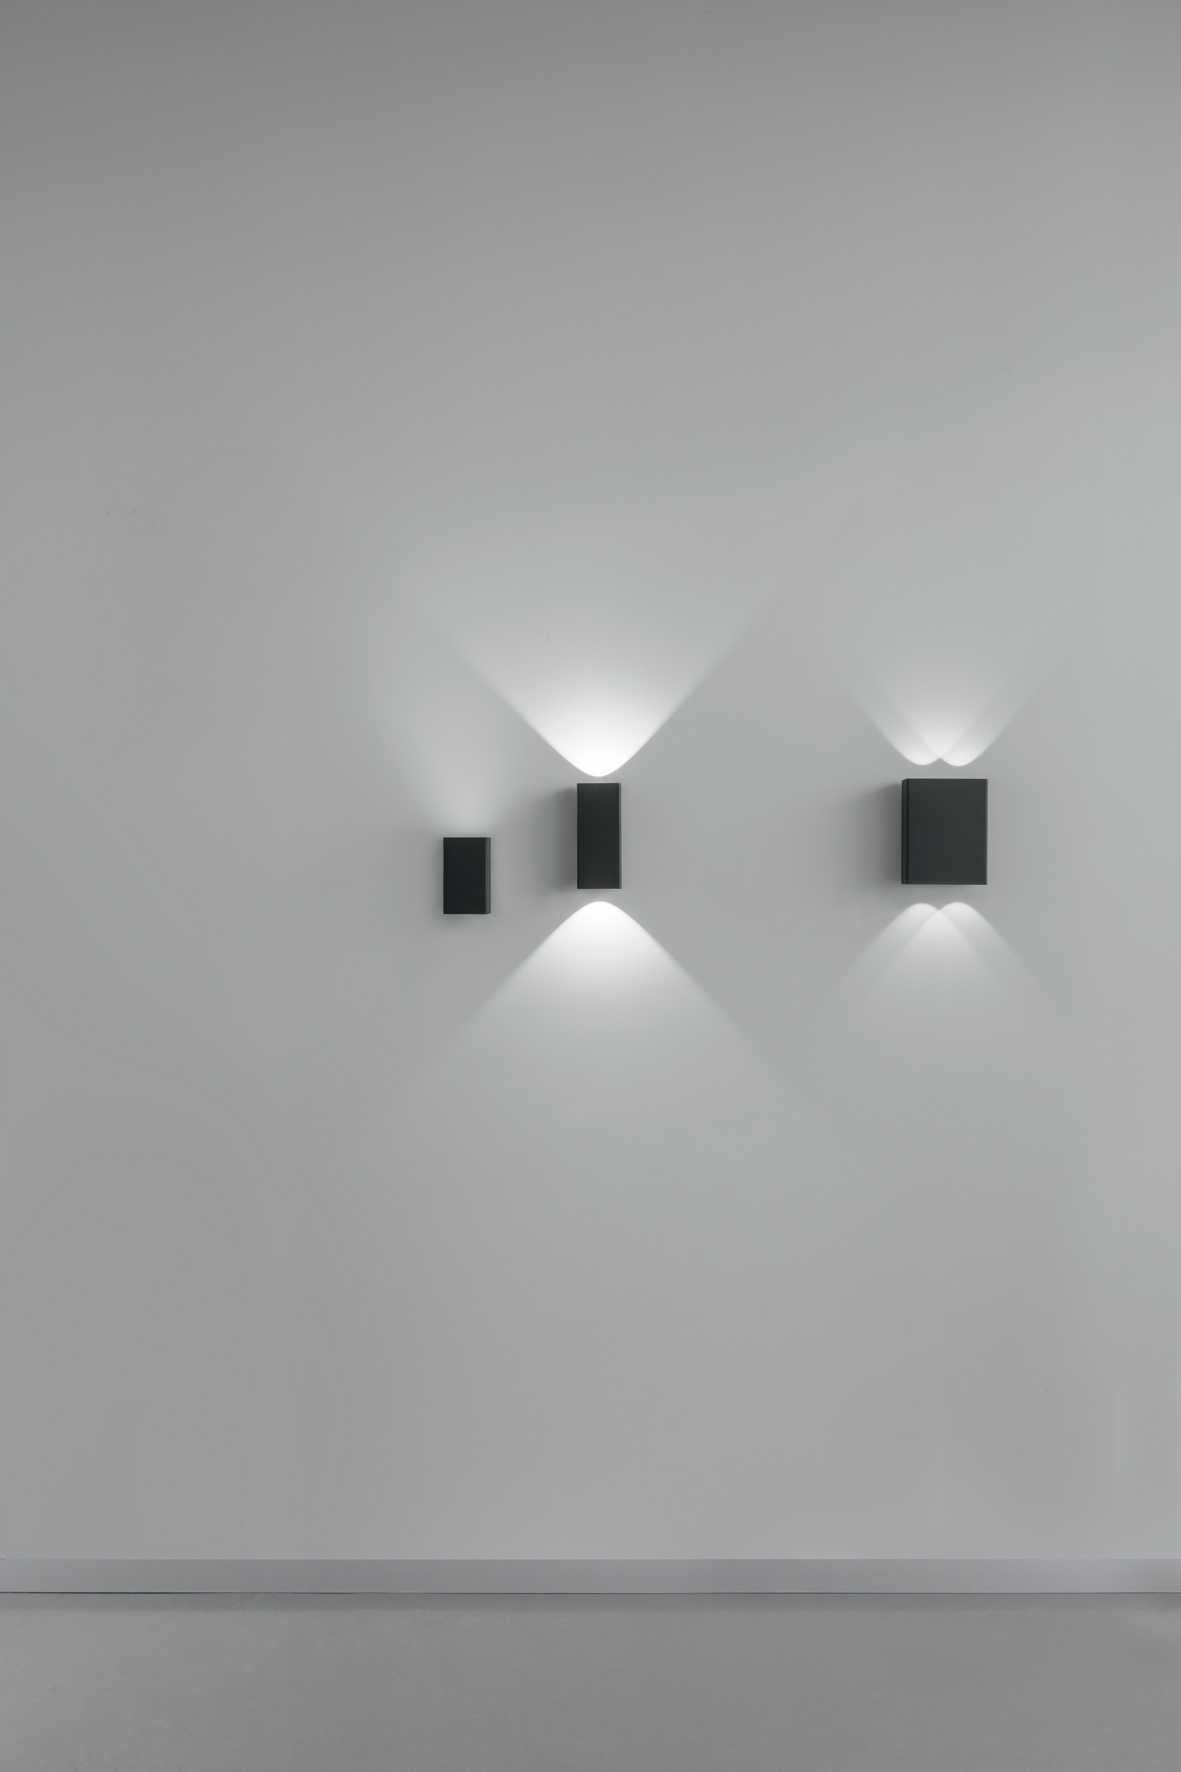 Illuminazione per l'esterno, Delta Light presenta la nuova collezione 1 Nocta